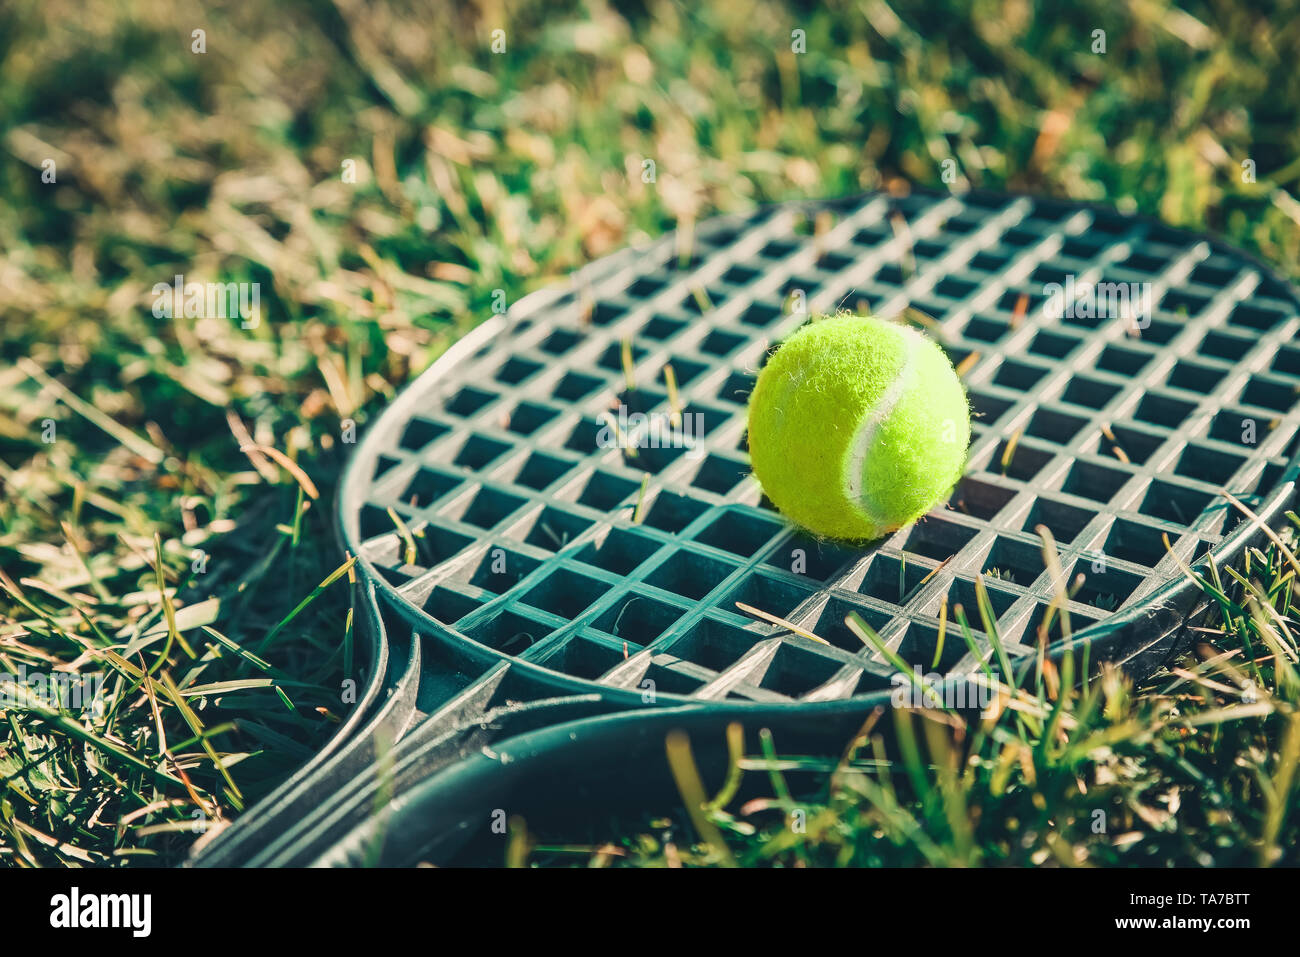 Pelota de Tenis acostado sobre una raqueta en el pasto verde. Concepto de los juegos de verano Foto de stock